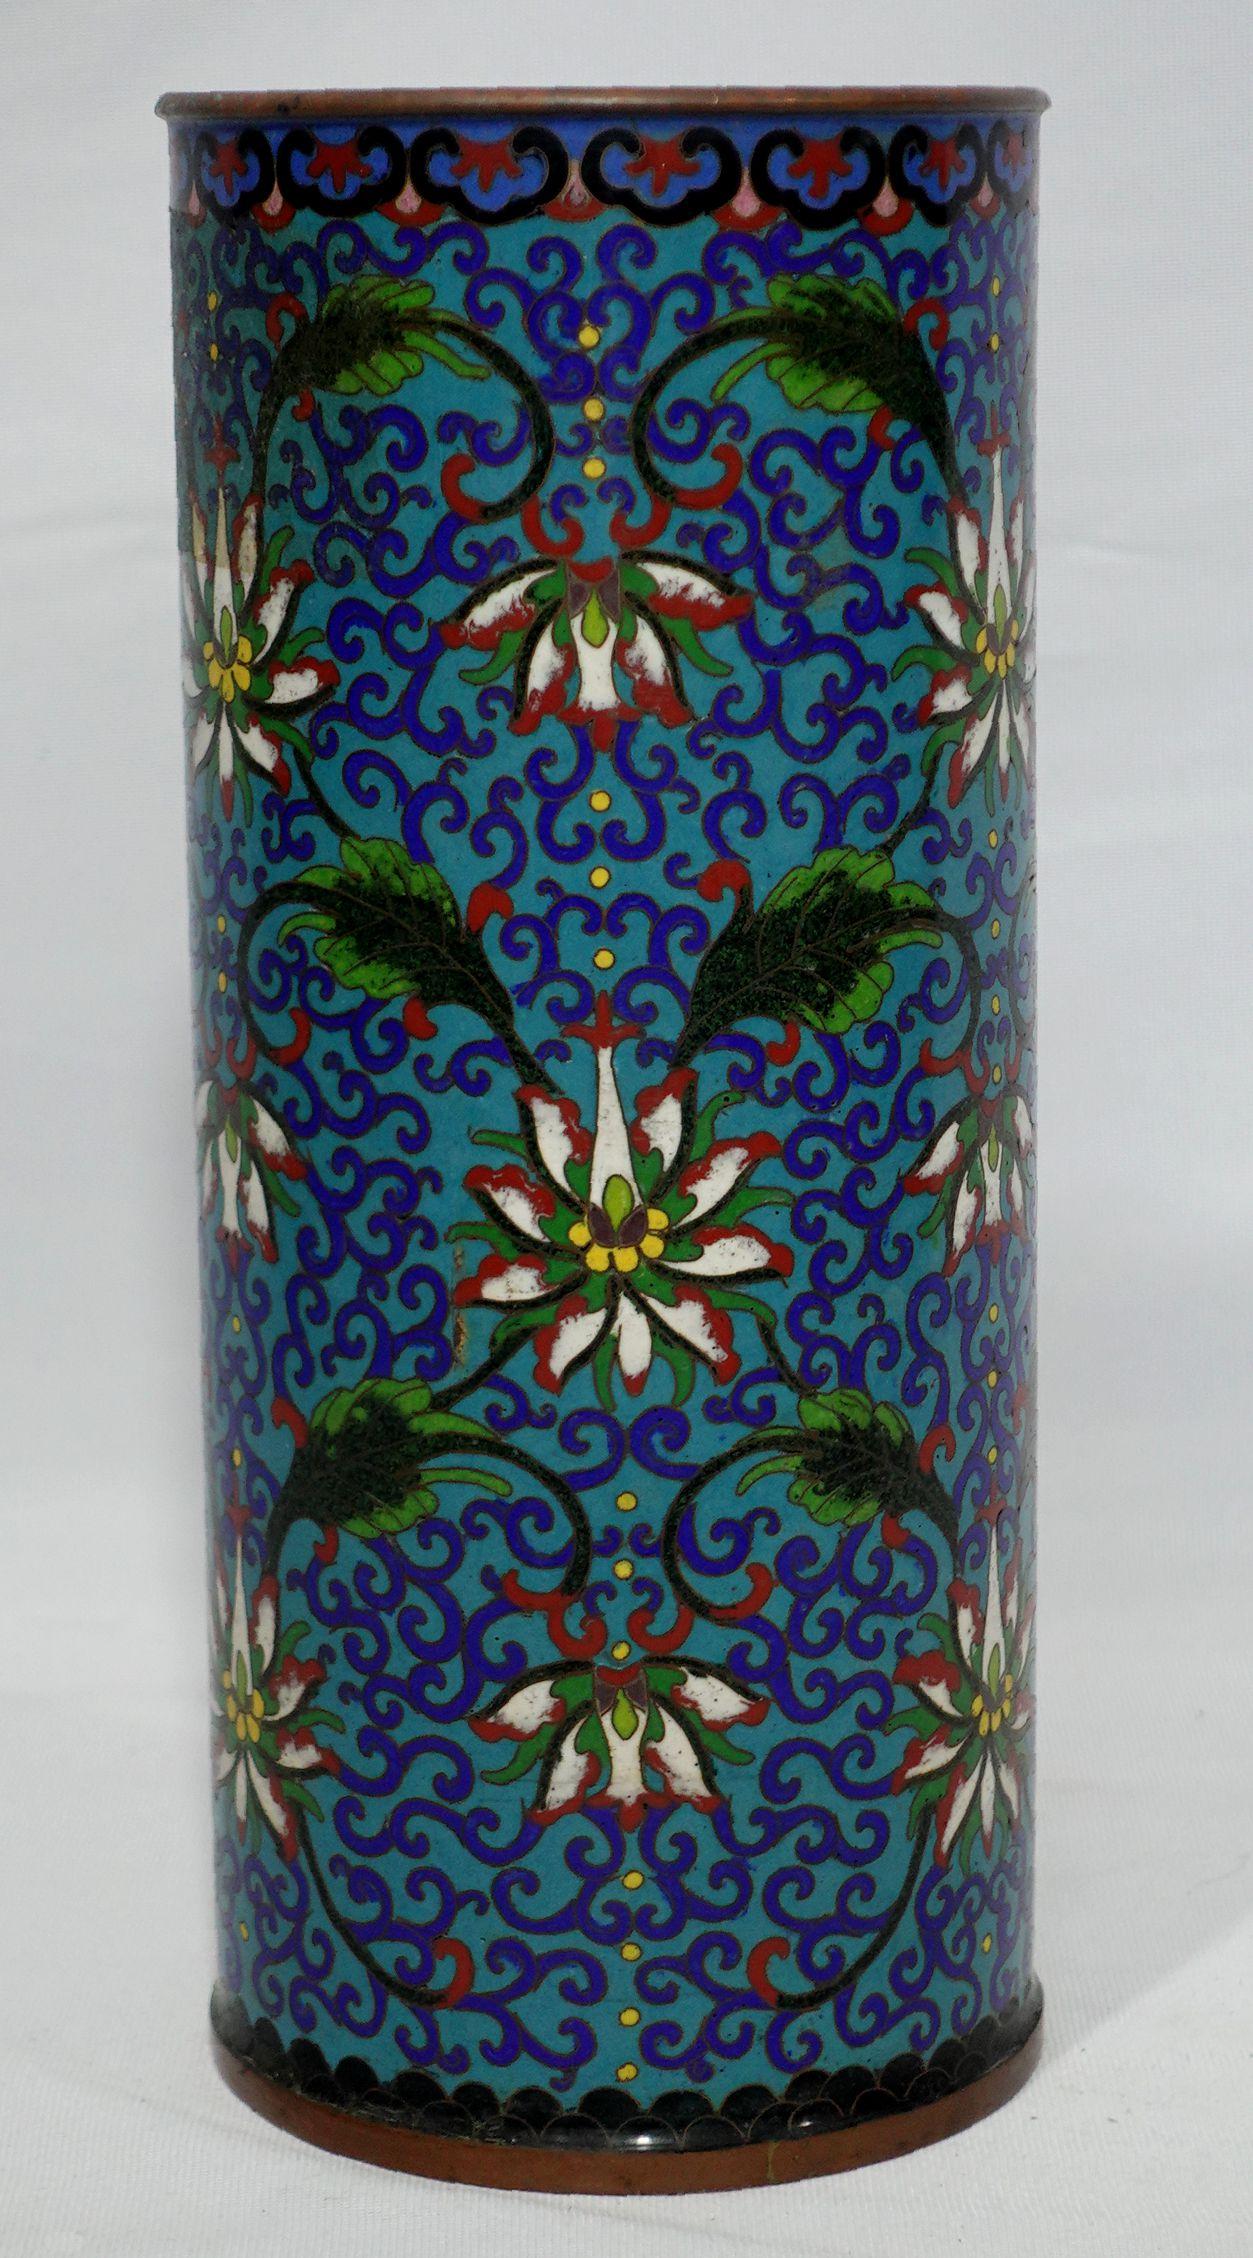 Travail de qualité, un grand vase chapeau cloisonné chinois représentant des motifs floraux sur tout le pourtour du vase avec des couleurs vives de jaune, vert, rouge, bleu, brun, rouge et cyan à la base. Marque Qianlong sur la base.
